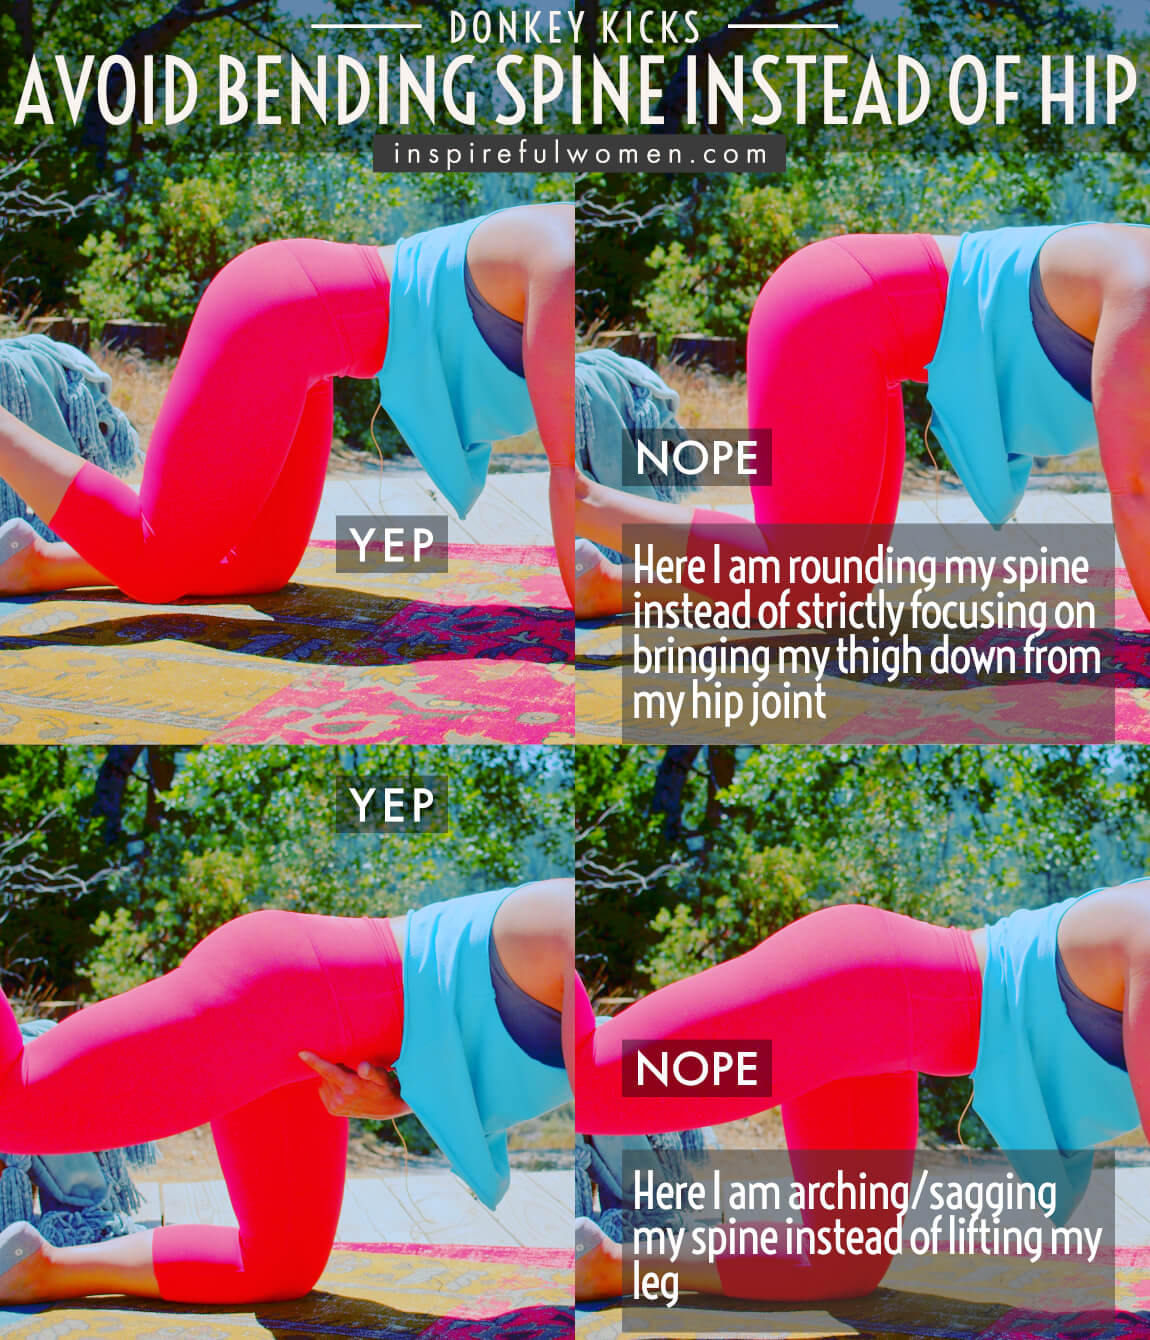 avoid-bending-spine-instead-of-hip-donkey-kicks-glute-exercise-proper-form